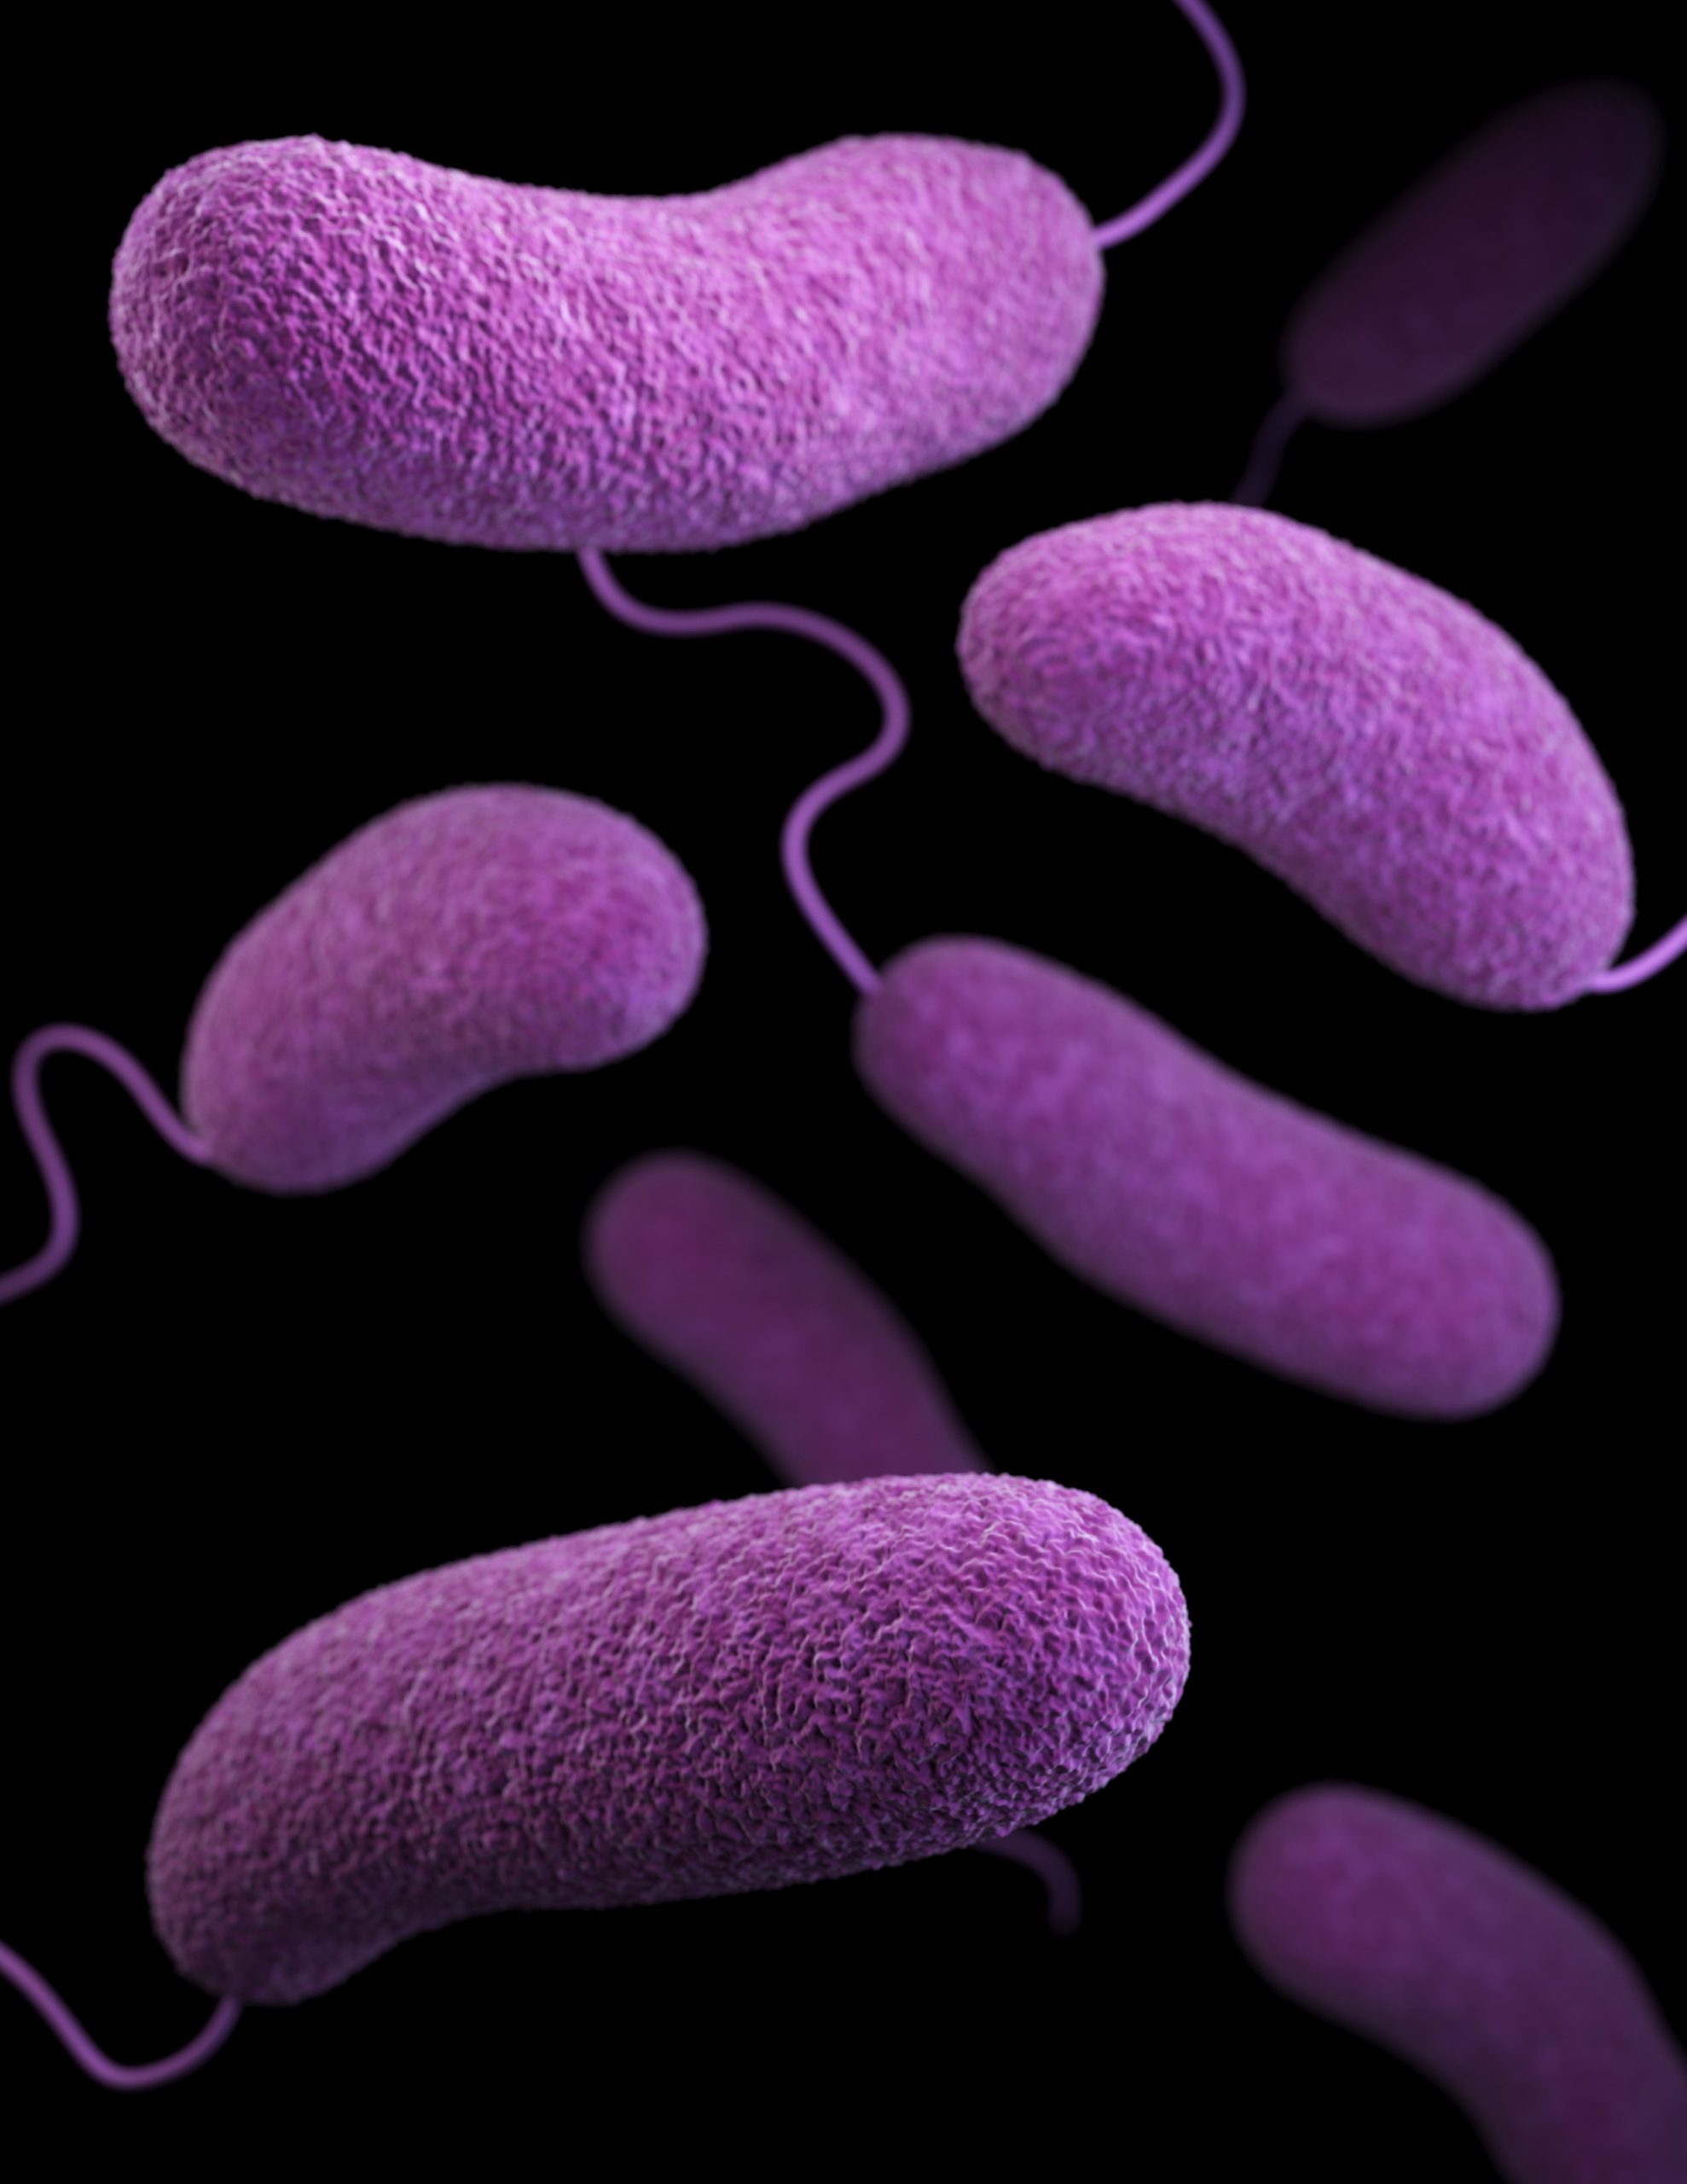 Bacterias ETS